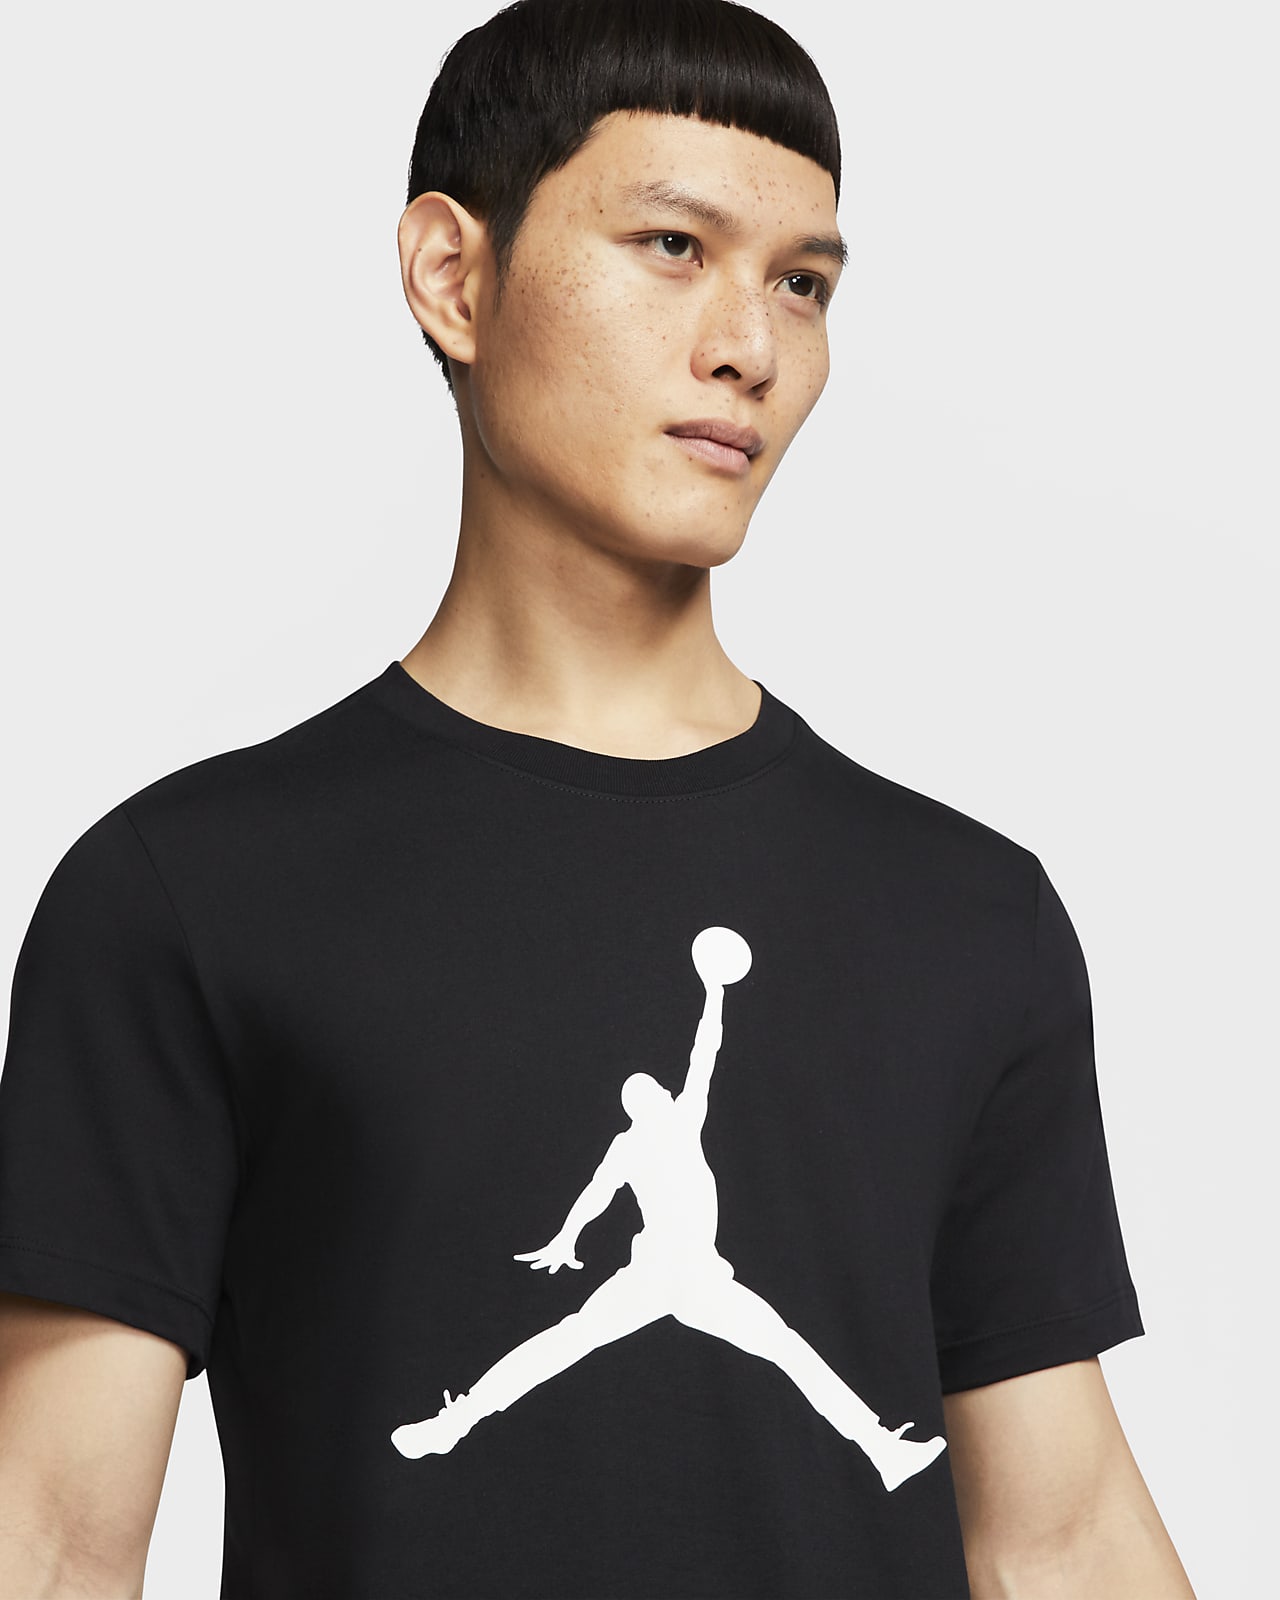 Jordan Jumpman Men's T-Shirt. Nike.com